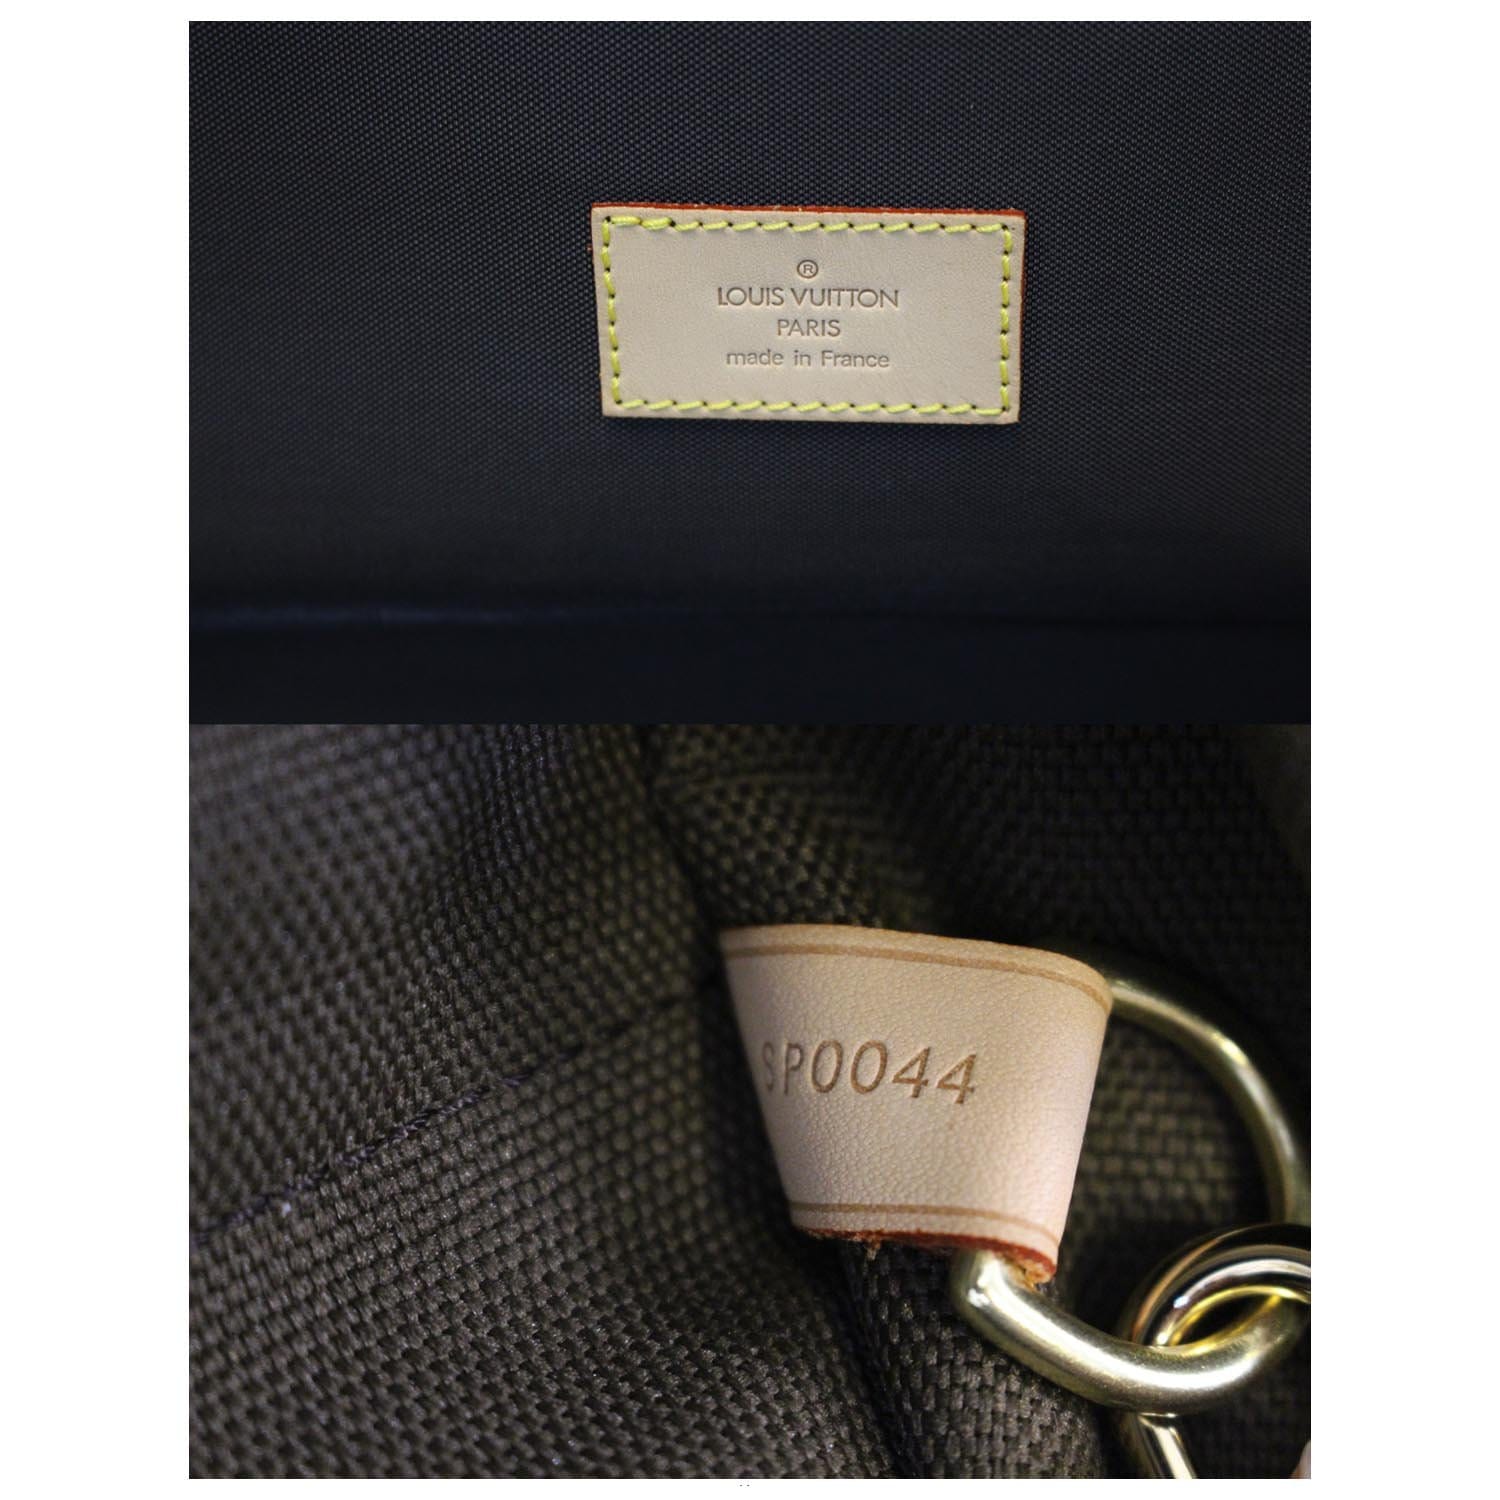 LOUIS VUITTON Canvas Fabric Garment Bag 46 X 23 X 4” Dress Suit